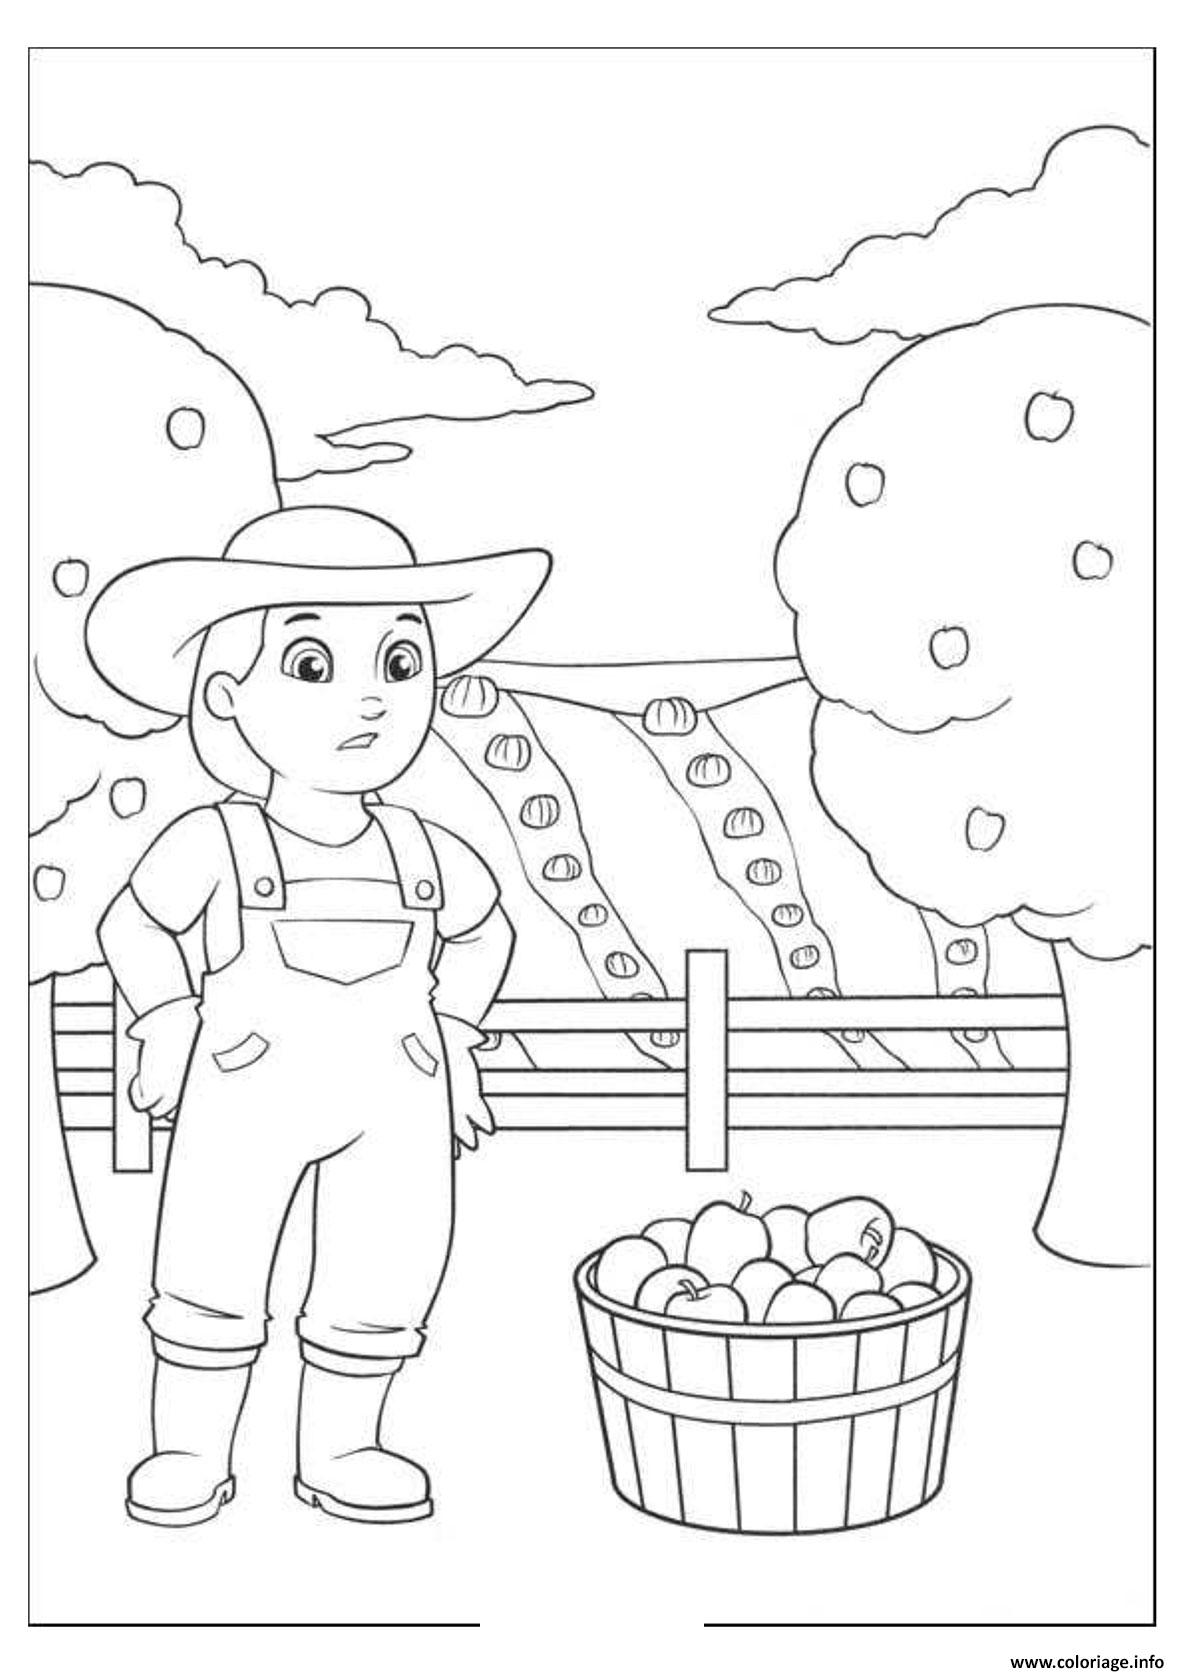 Dessin La fermiere Yumi recolte des pommes Coloriage Gratuit à Imprimer